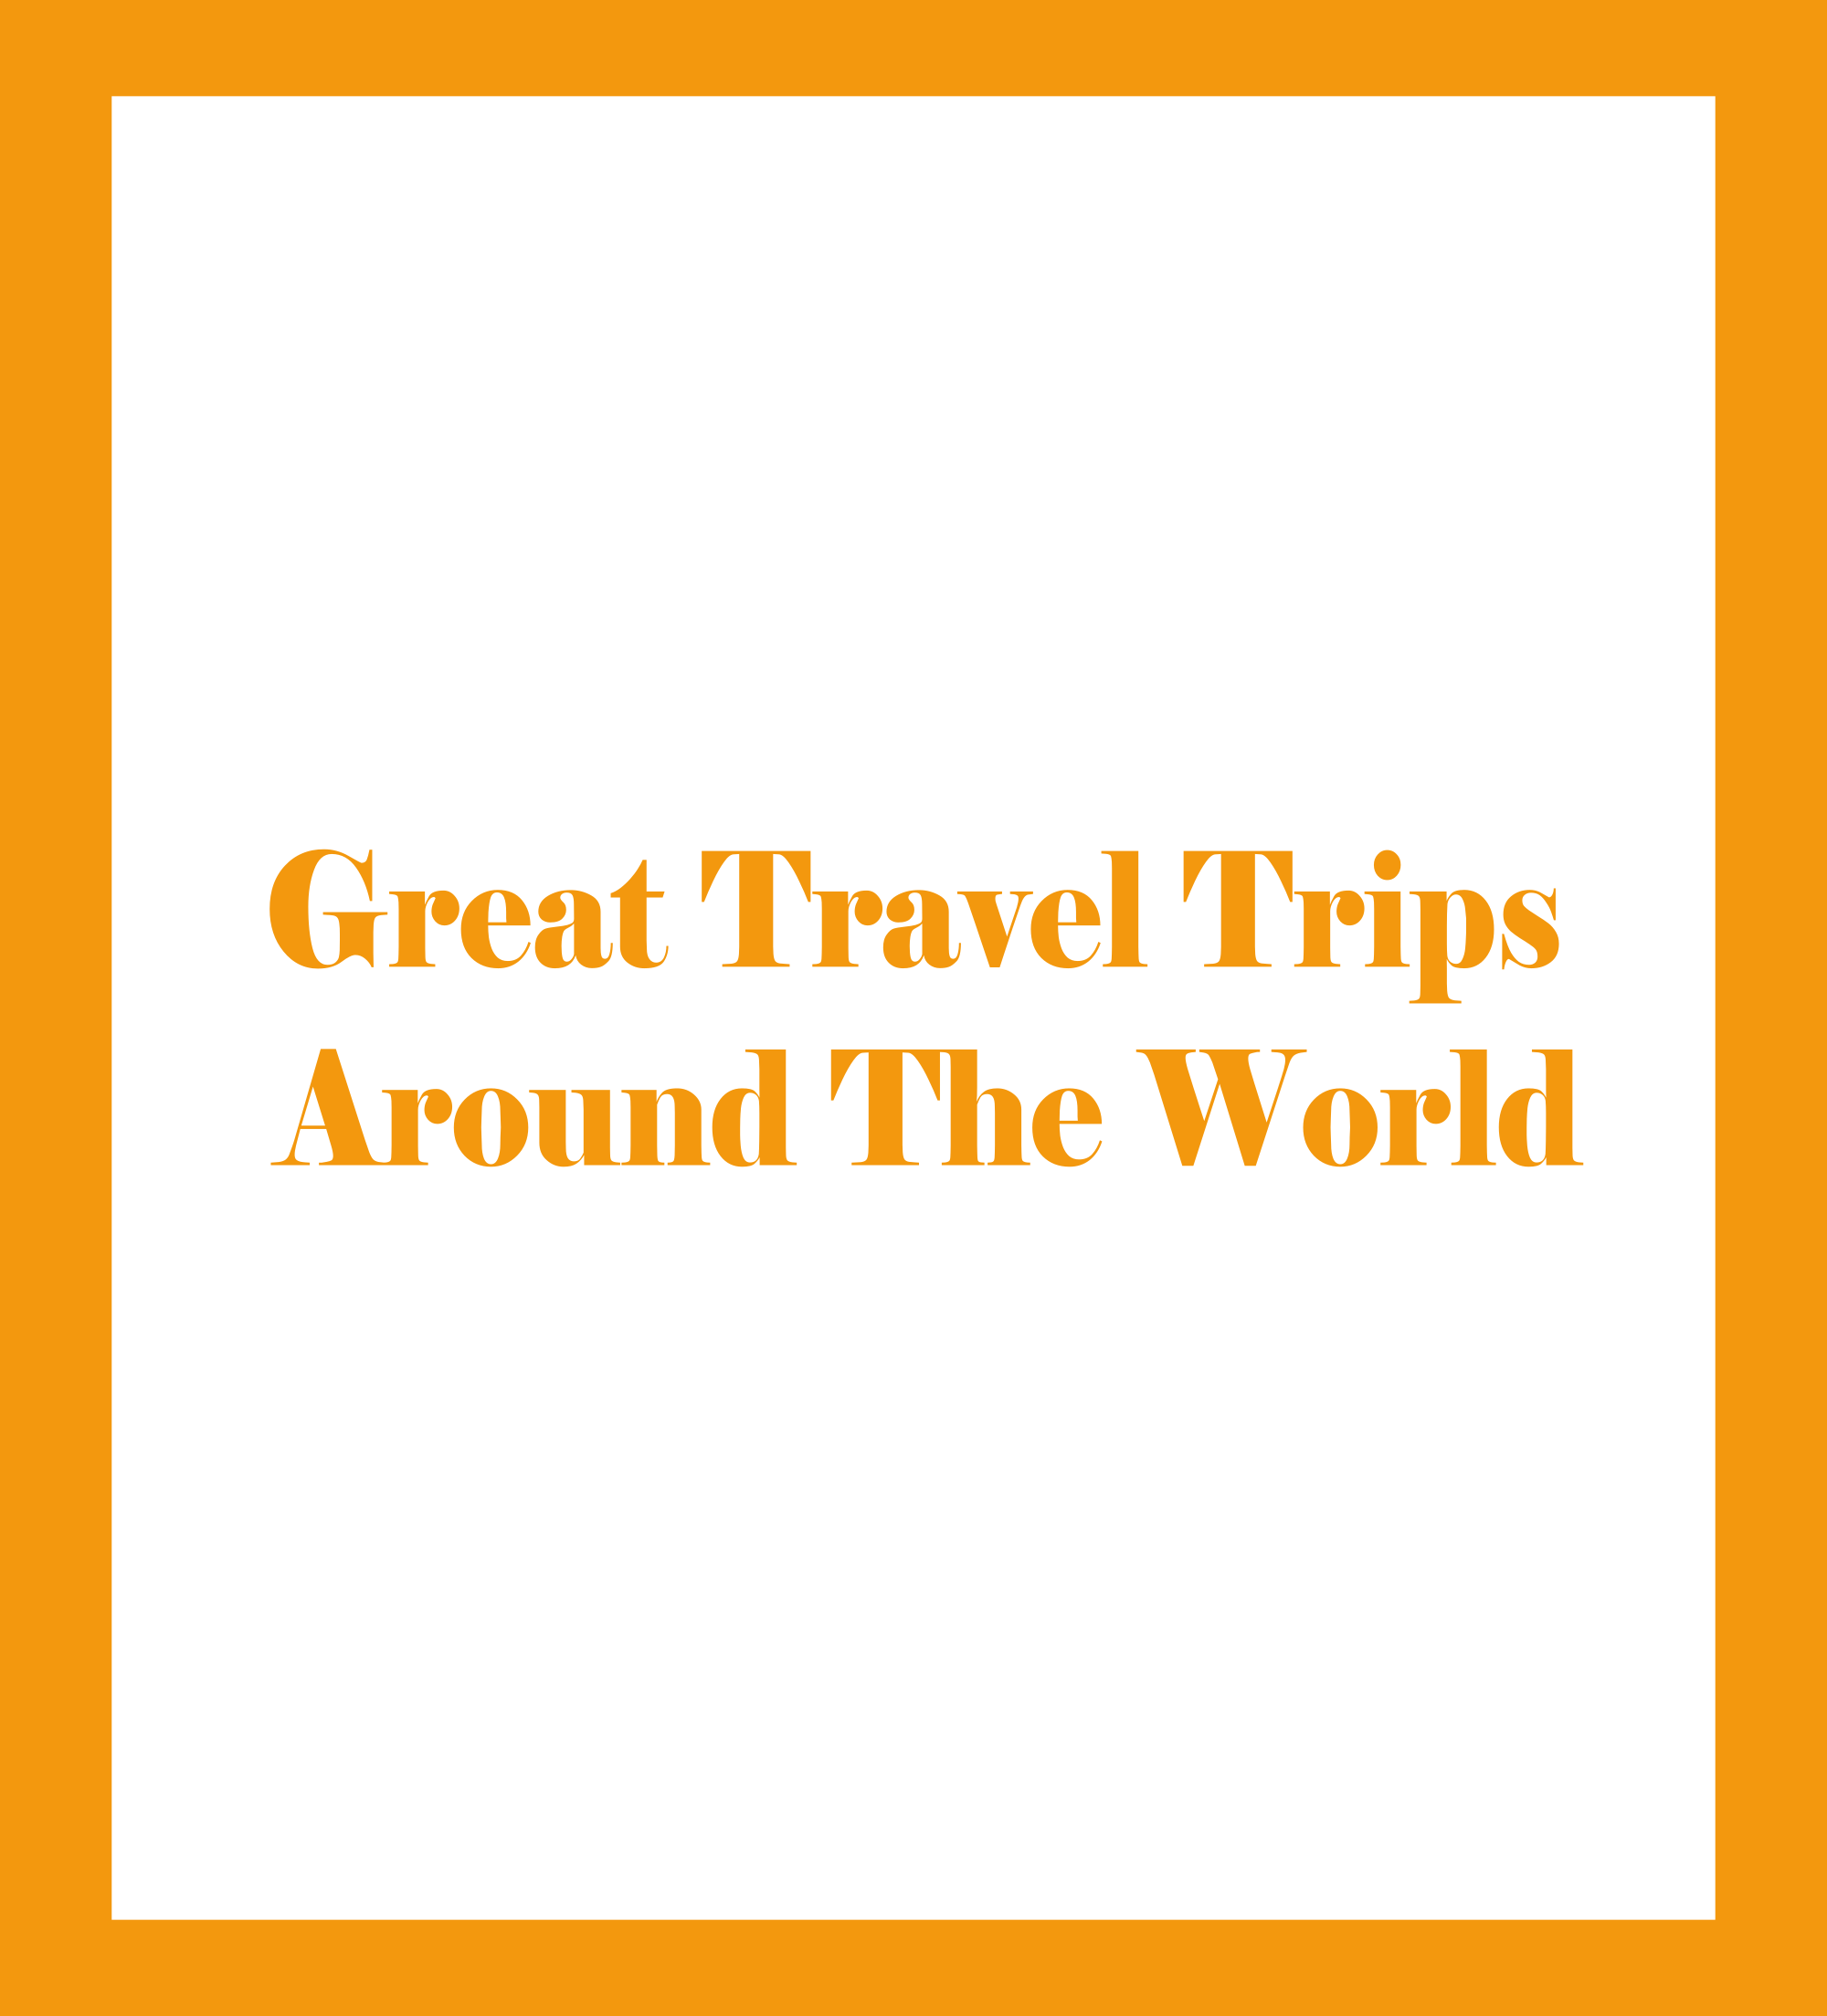 Caratula de Great Travel Trips Around The World (Grandes viajes en tren alrededor del mundo) 